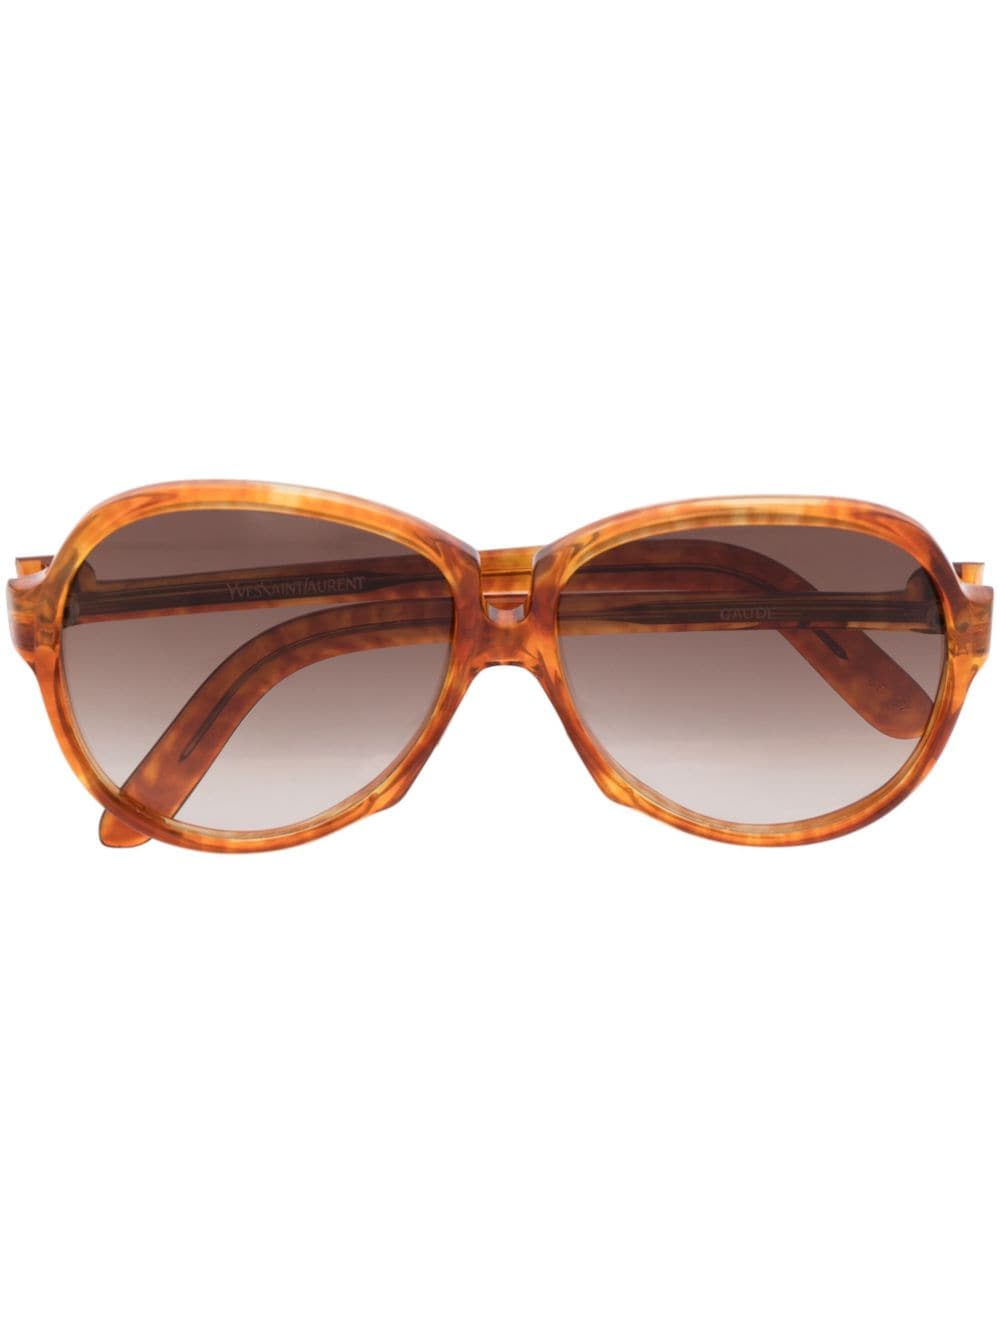 Saint Laurent Pre-Owned 1970s oval gradient sunglasses - Brown von Saint Laurent Pre-Owned